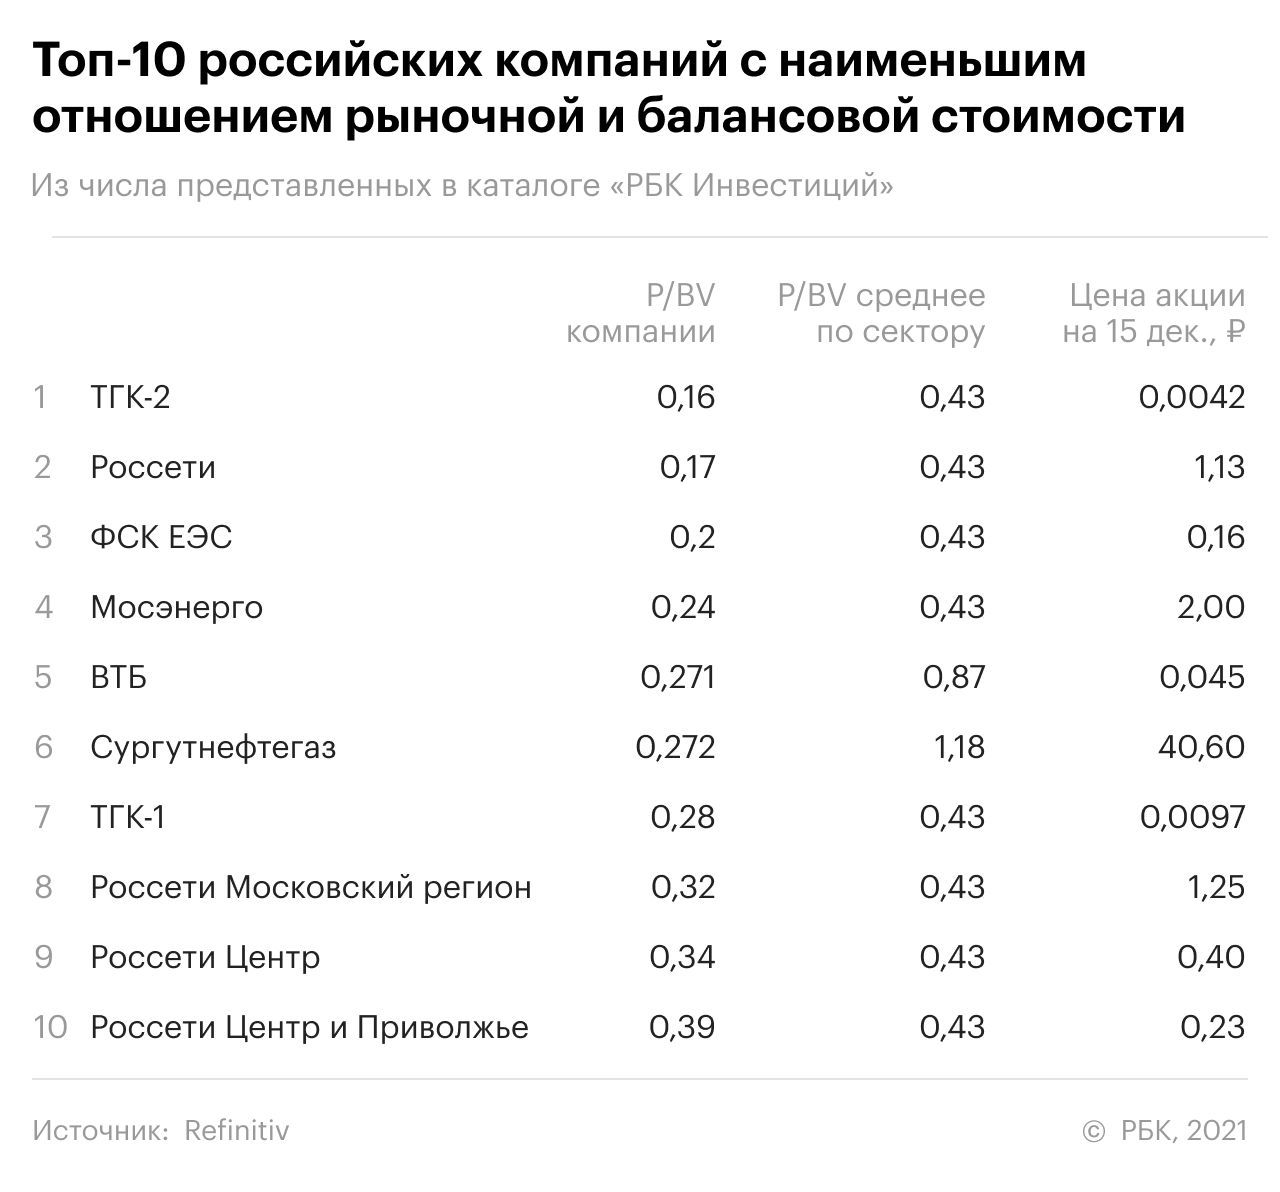 Топ-10 российских компаний с наименьшим P/BV